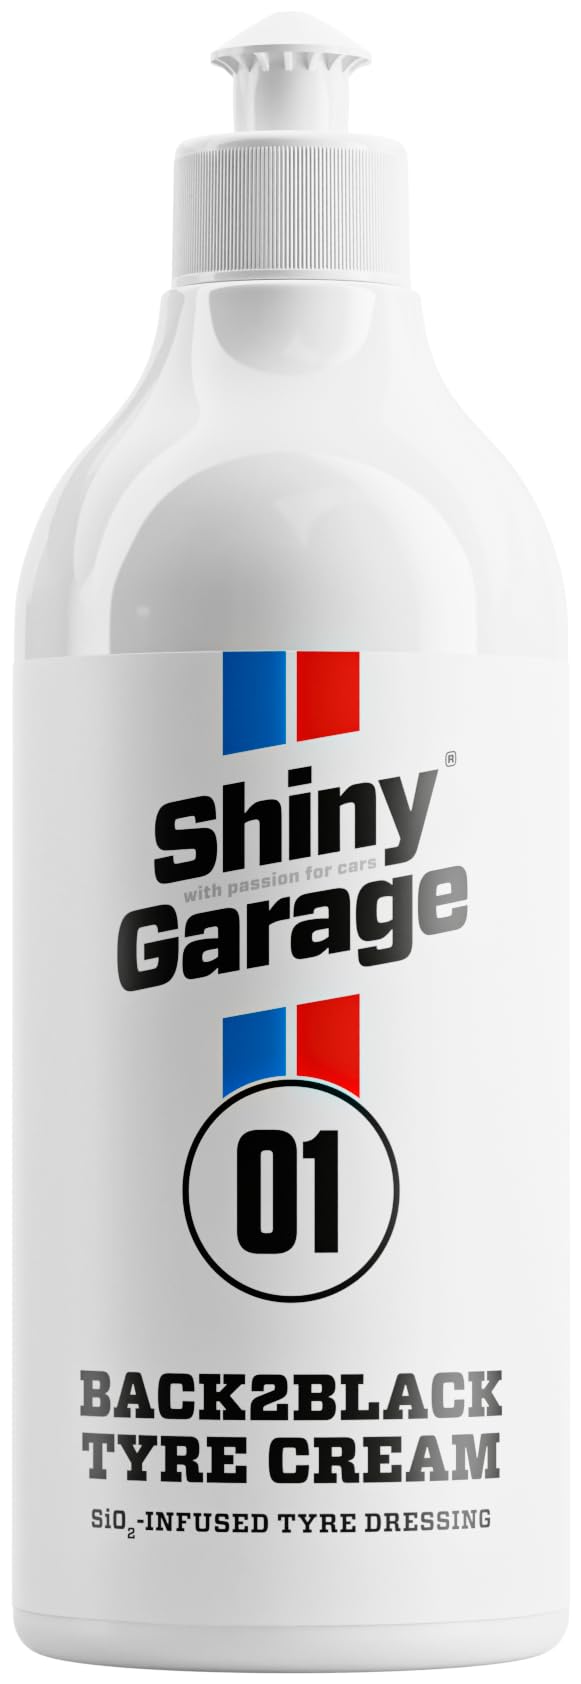 Shiny Garage Reifenpflege Auto “Back2Black” 500 ml - Reifenglanz - Motorrad und Auto Zubehör für Reifen Glanz - Wirksam Autoreifen Cleaning von Shiny Garage with passion for cars